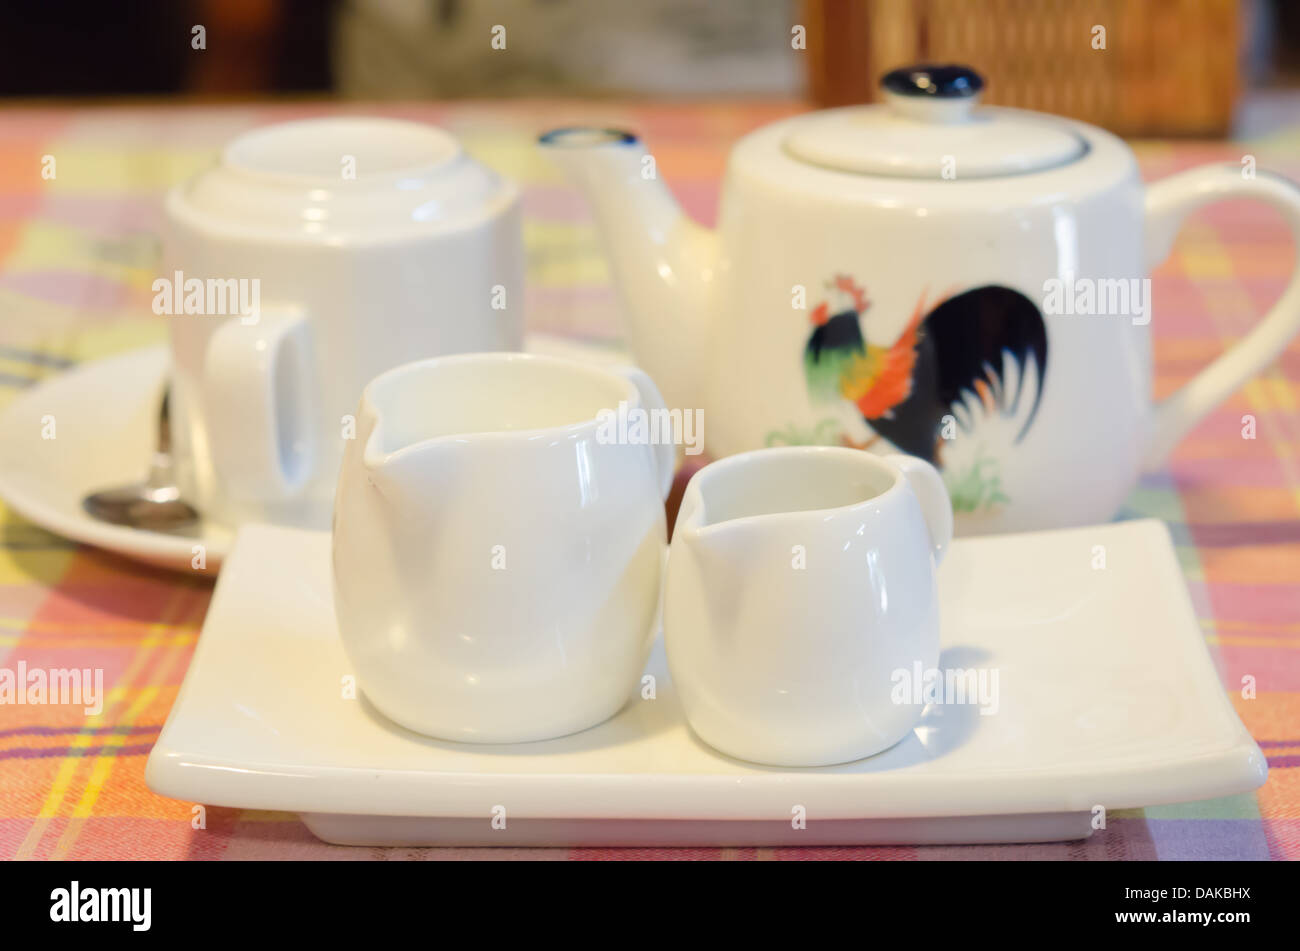 Weiße Milch Krug auf weißen Teller, Teekanne und Tasse auf Teller Stockfoto